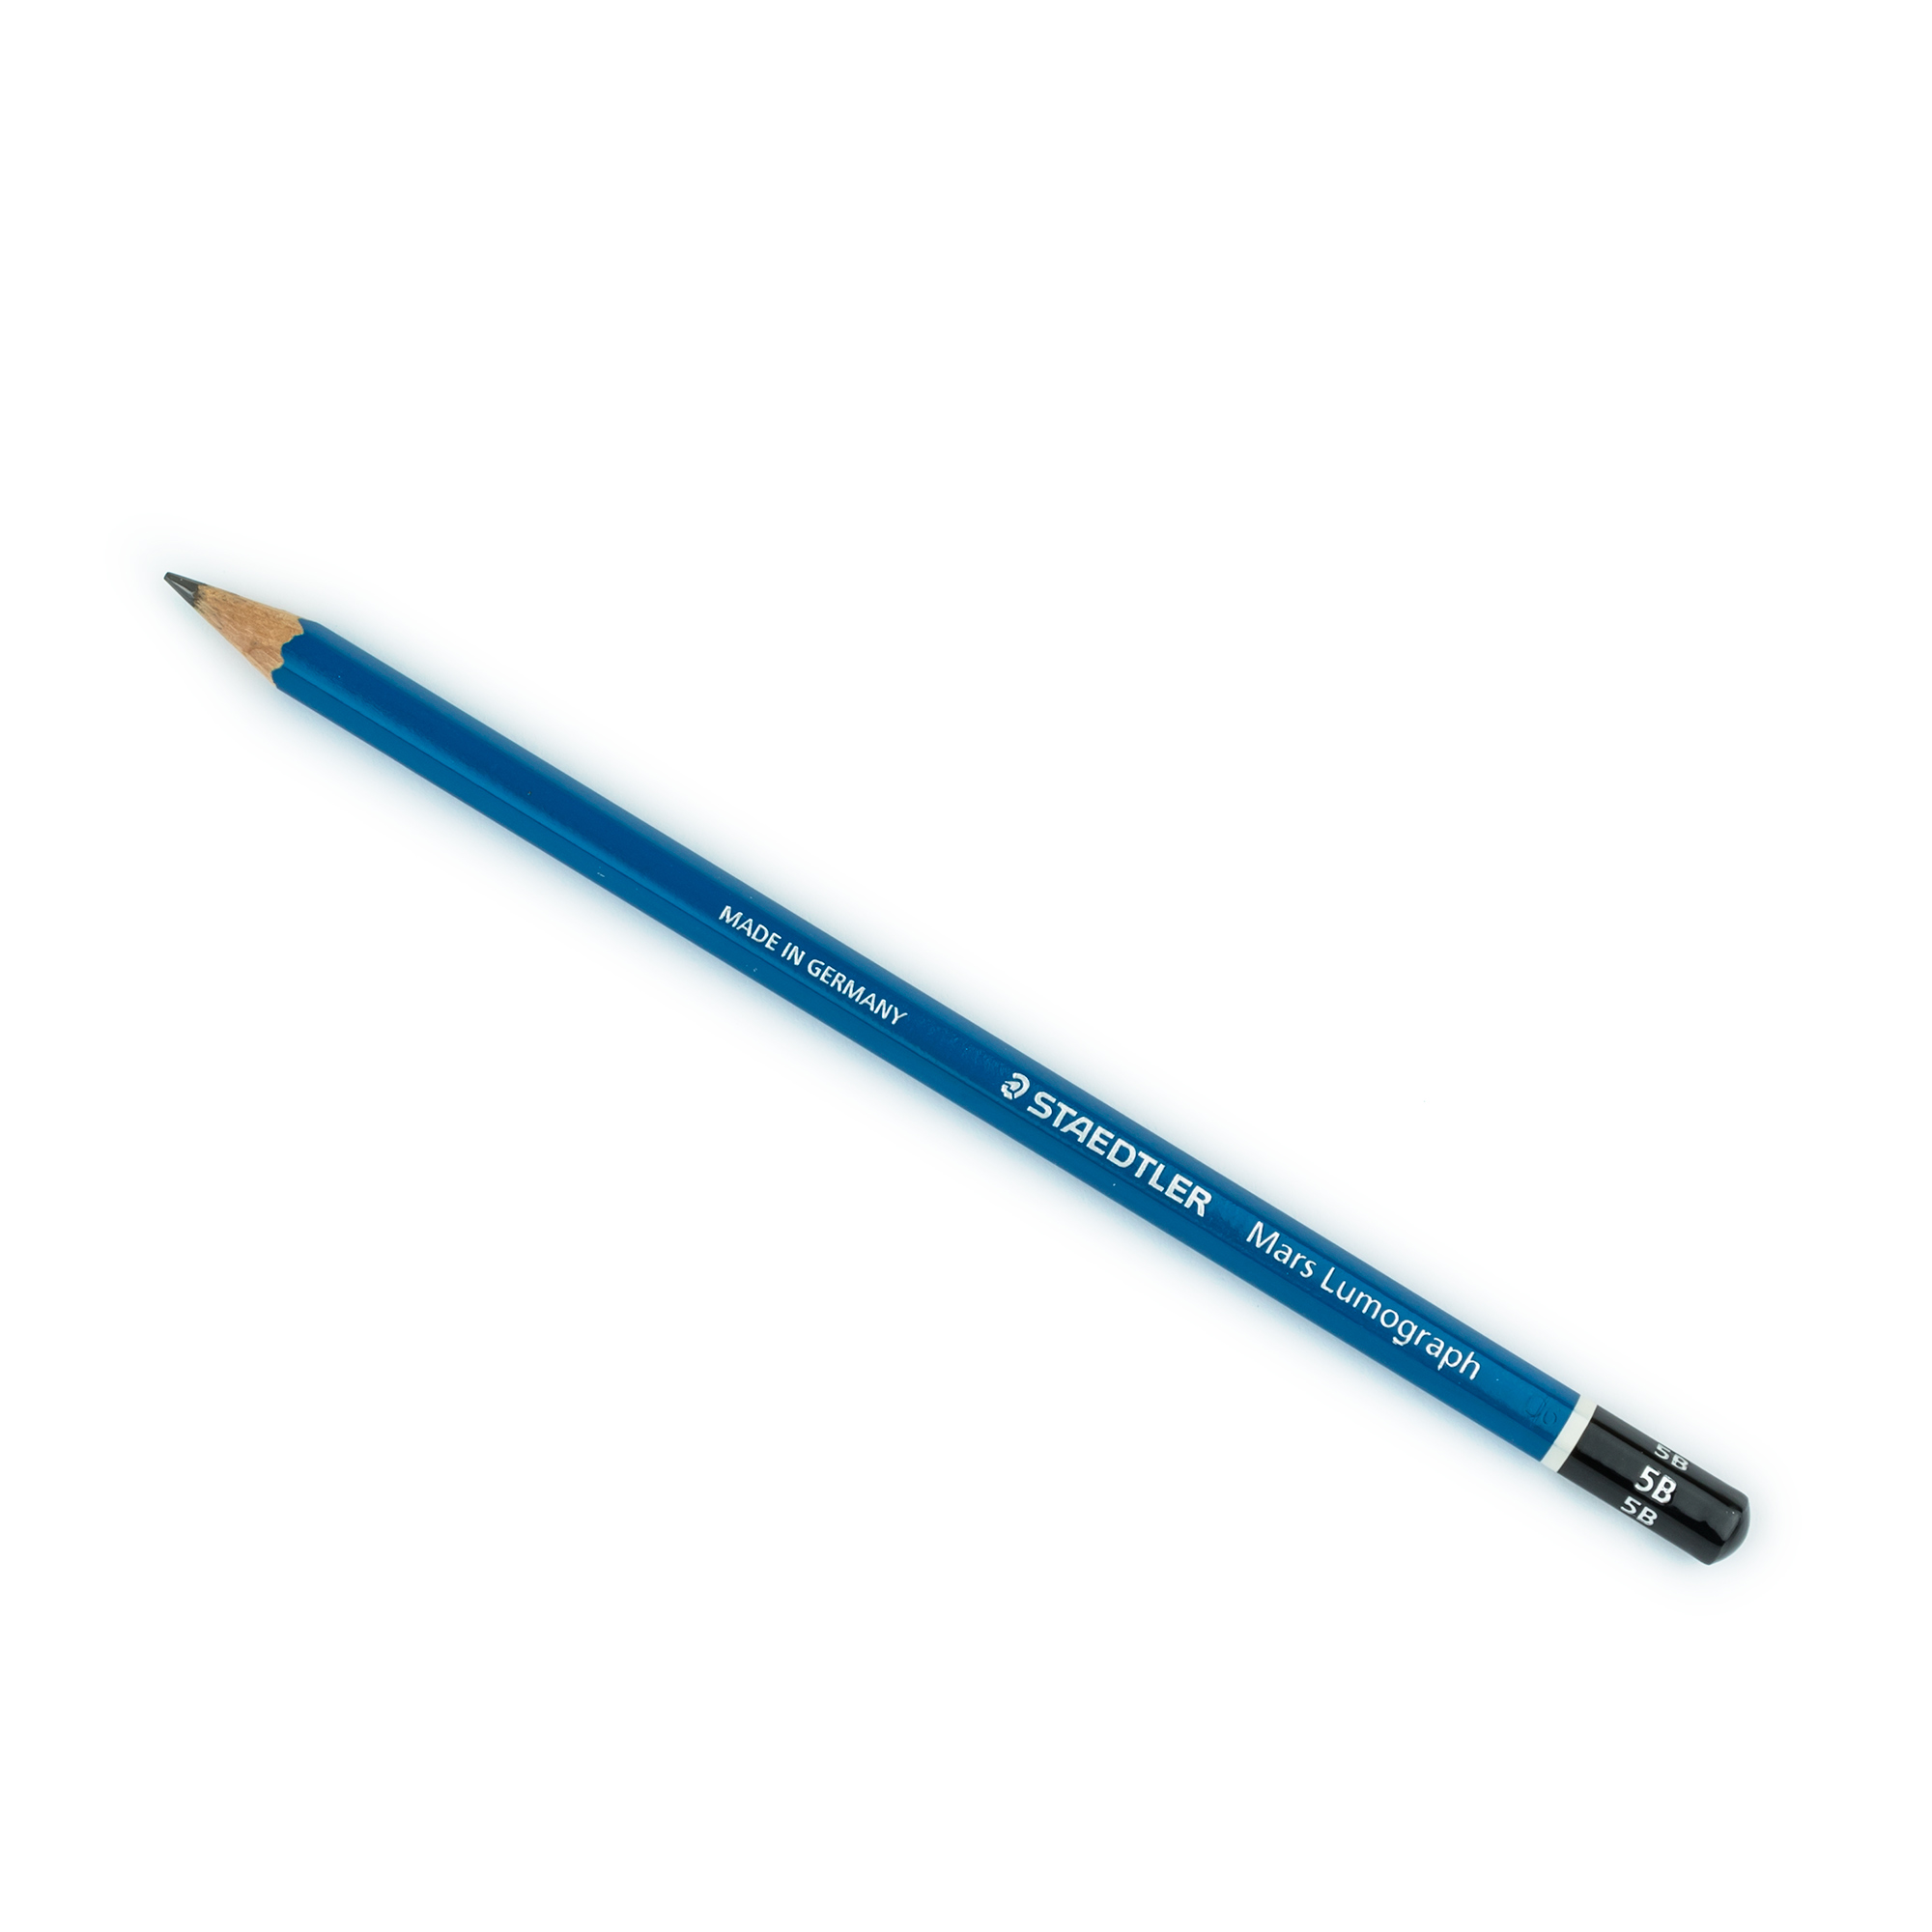 https://scribemarket.com/notebooks/staedtler-mars-lumograph-100-5b-pencil-1.jpg